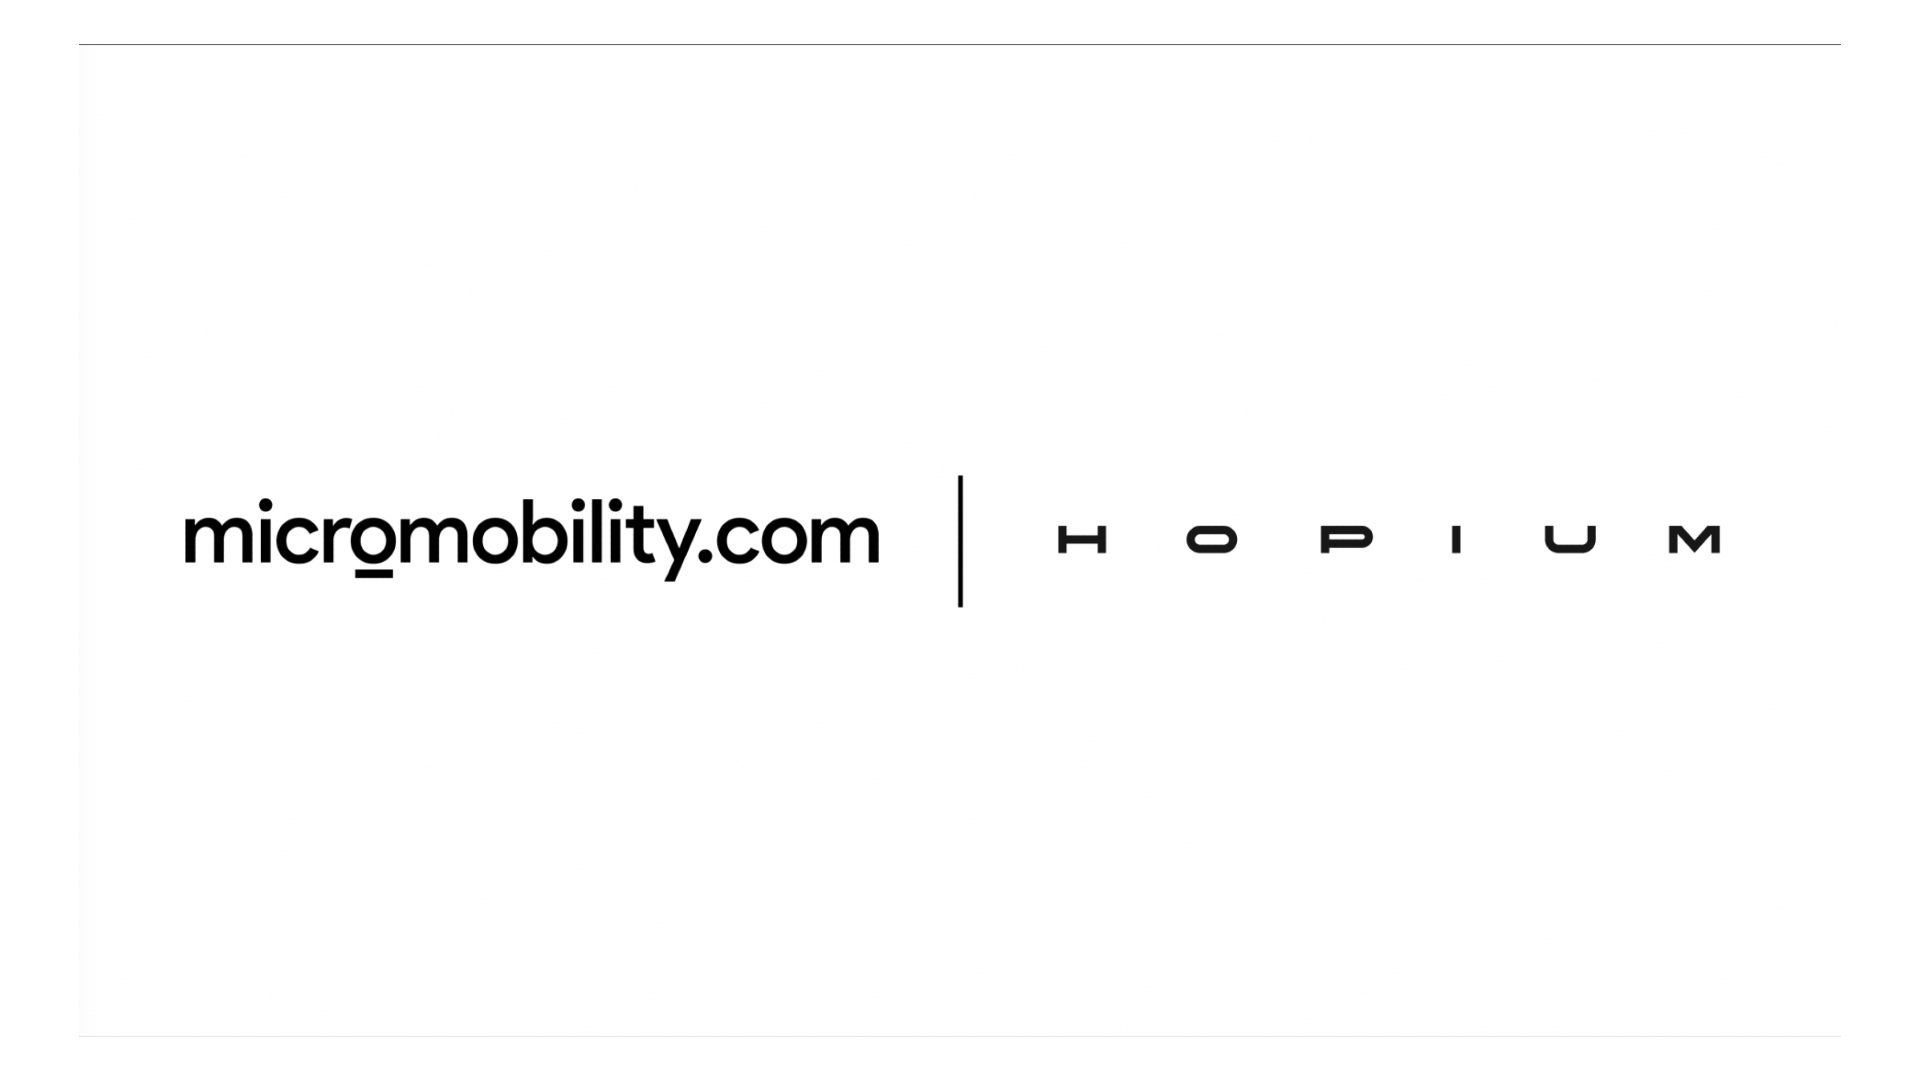 Hopium Micromobility.com